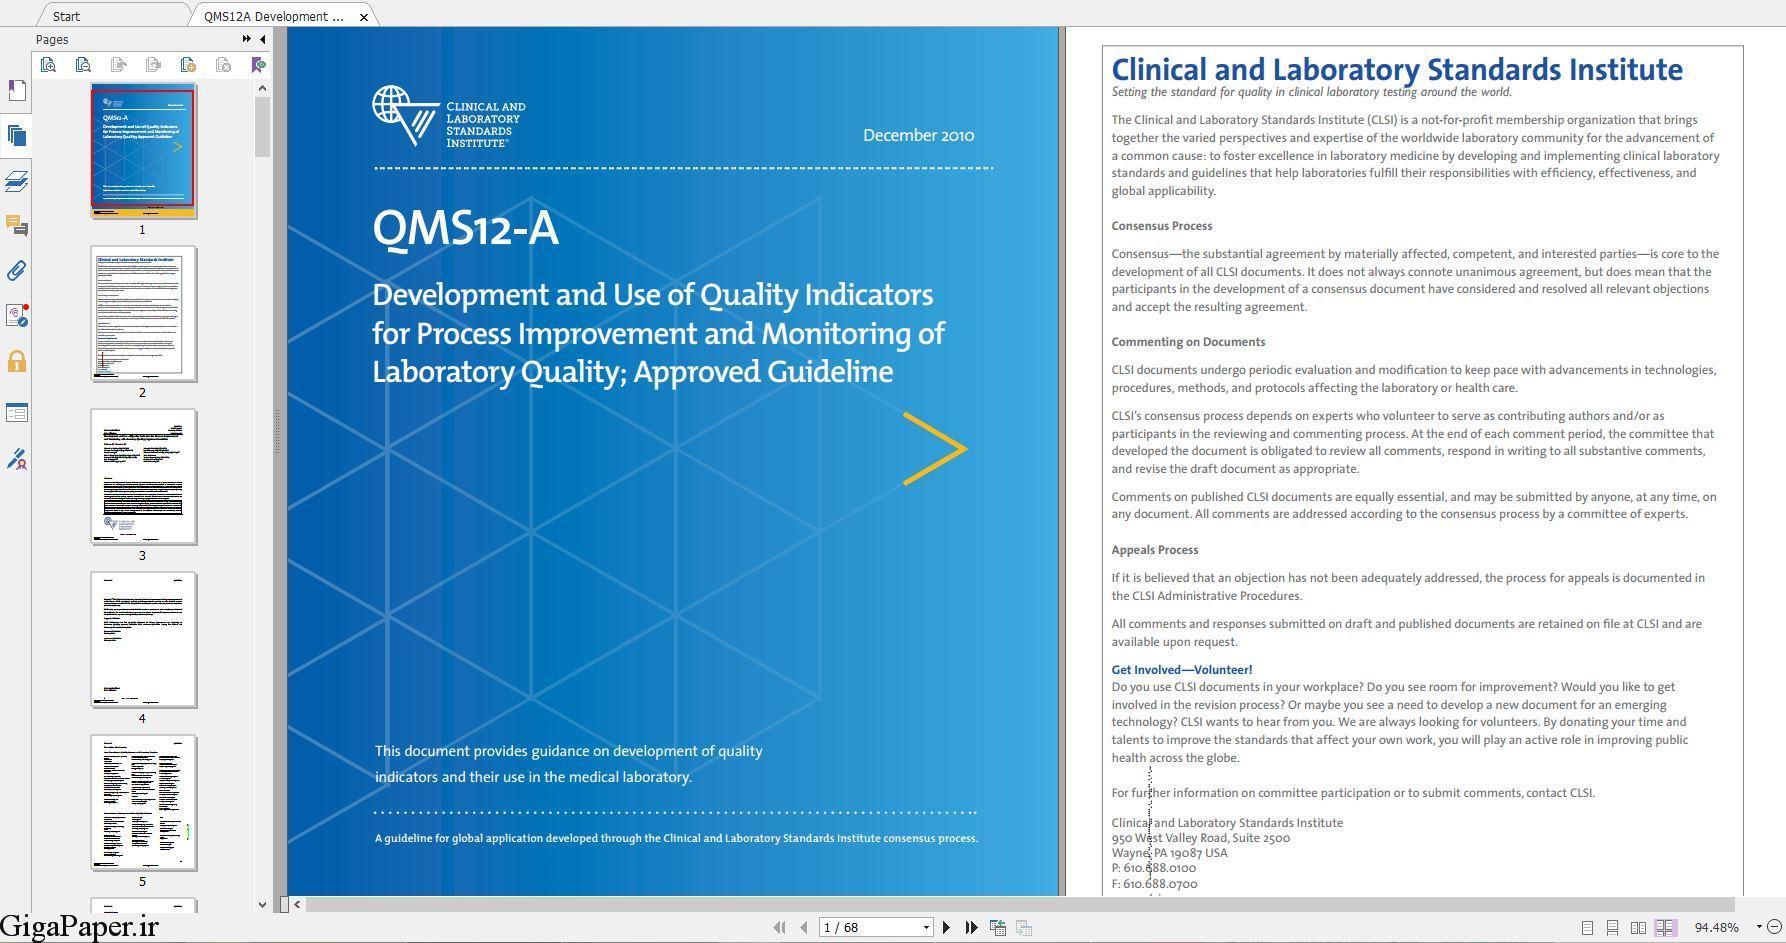 دانلود استاندارد CLSI QMS12 خرید استاندارد QMS12-A Development and Use of Quality Indicators for Process Improvement and Monitoring of Laboratory Quality گیگاپیپر